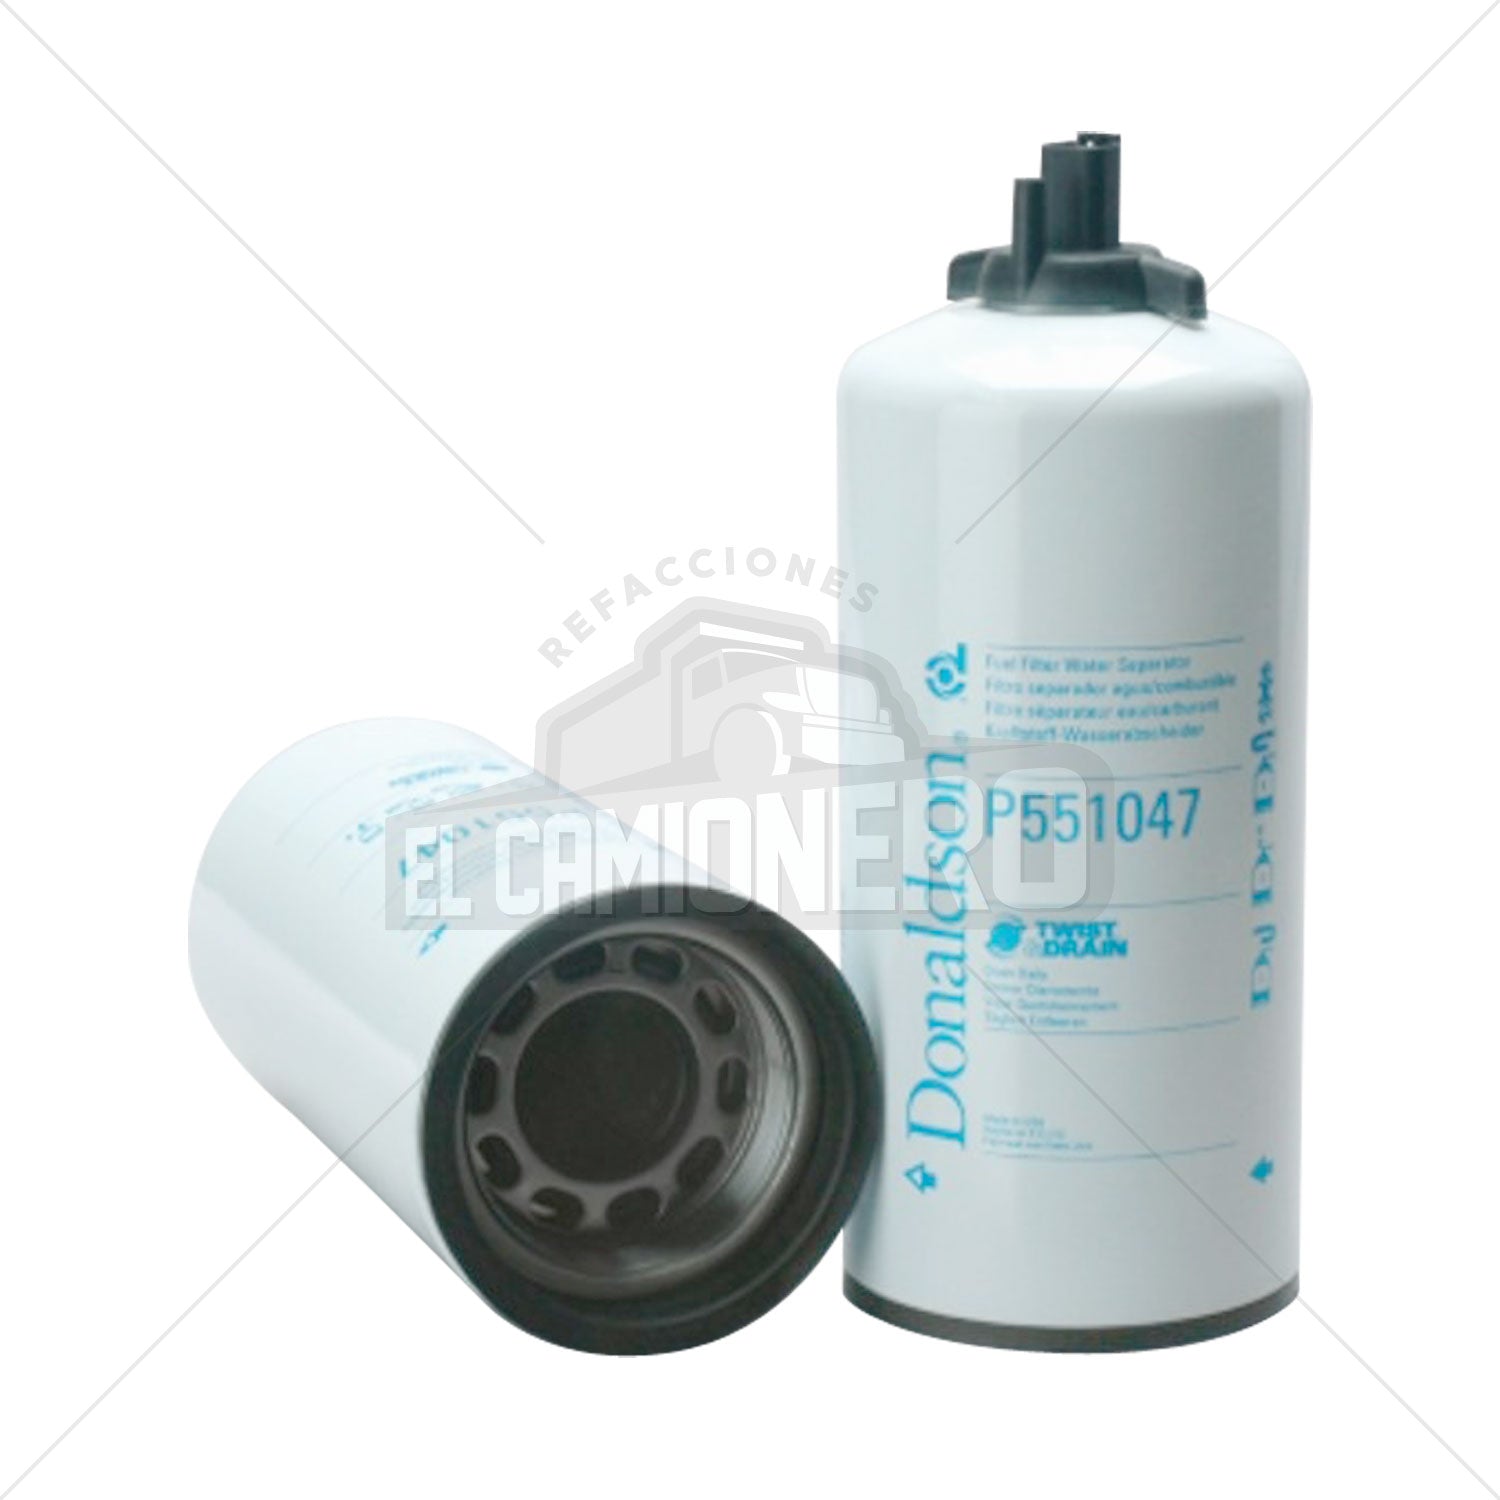 Filtro de combustible separador de agua Donaldson P551047